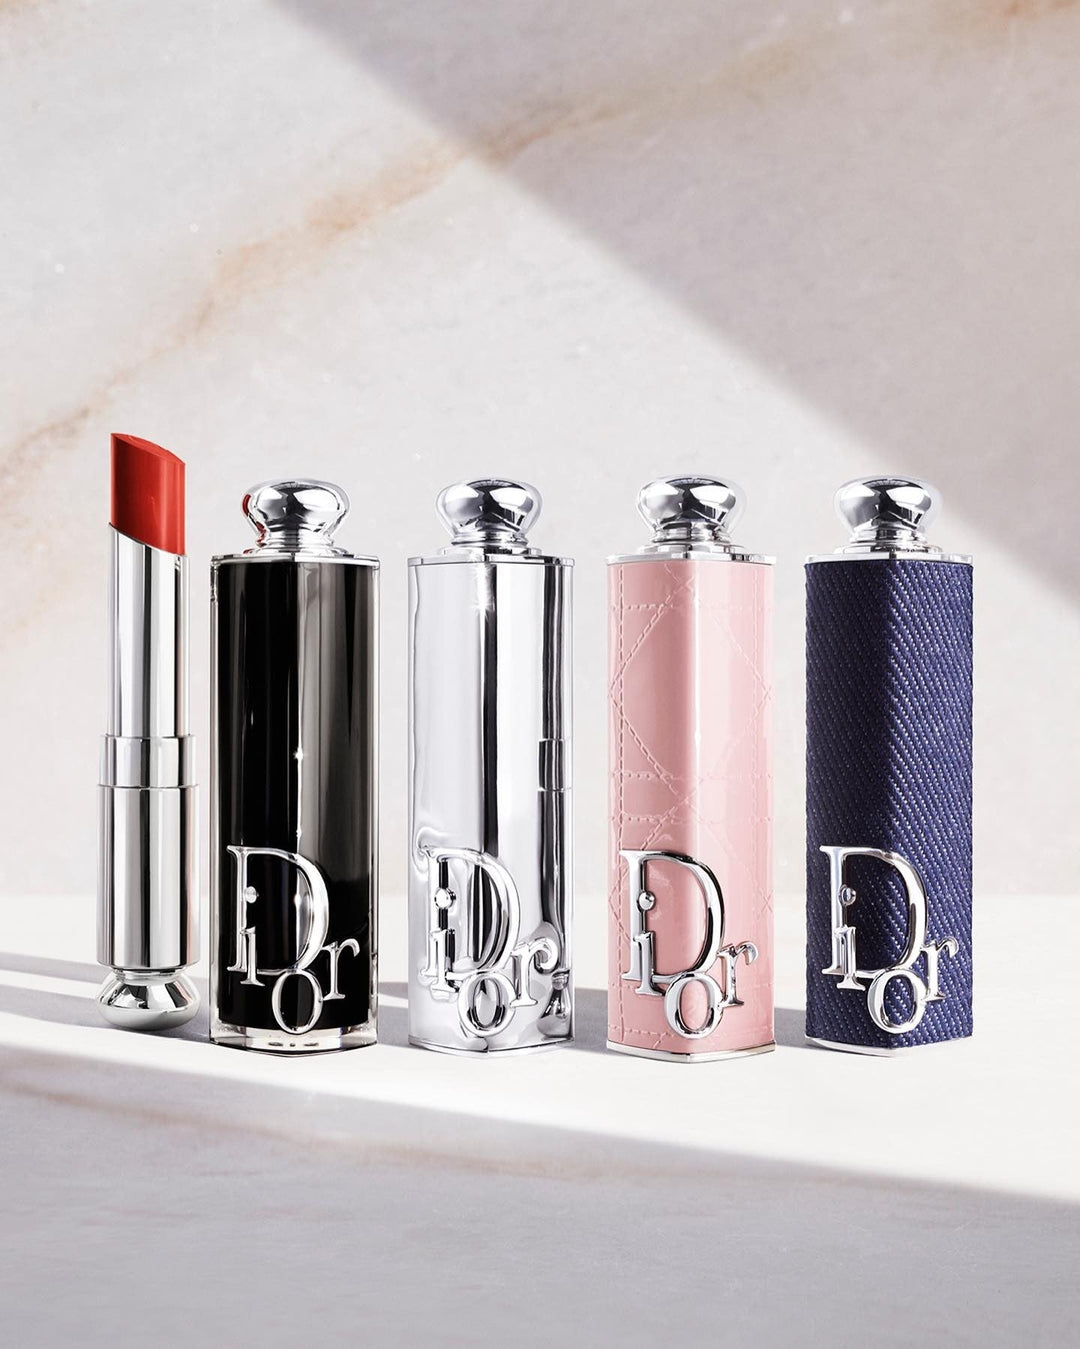 Son Dior Addict Lipstick - 391 Dior Lilac